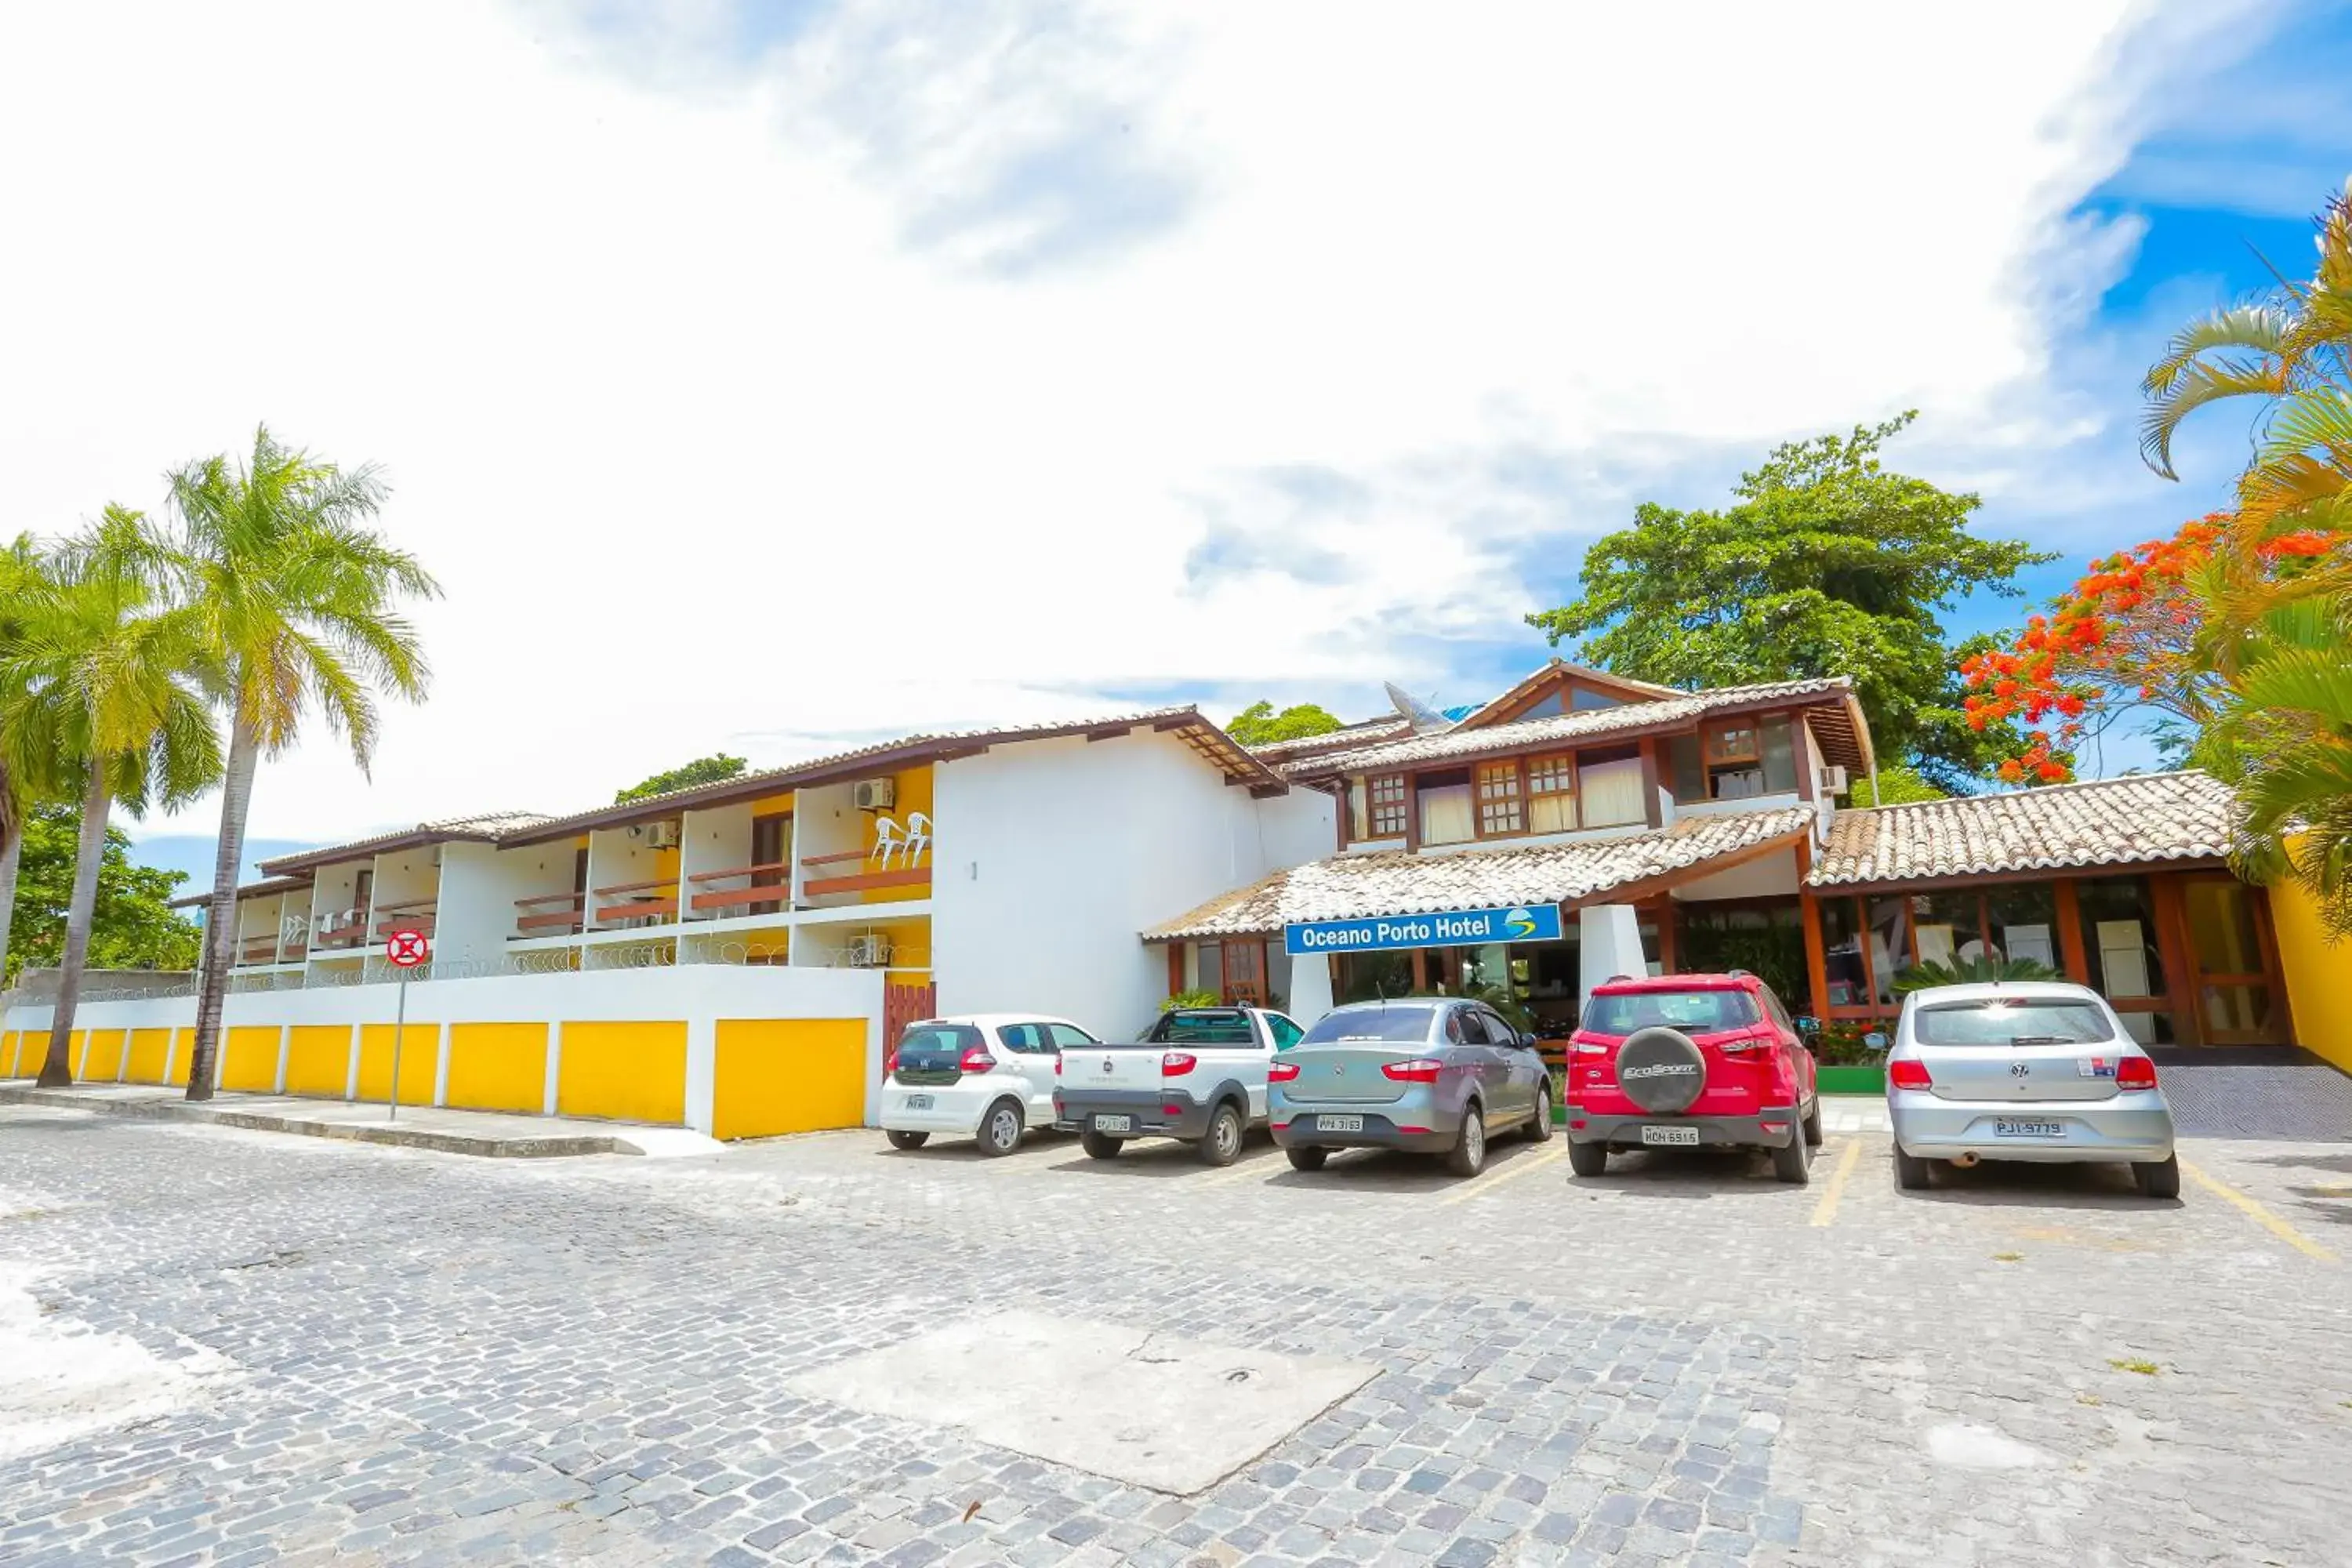 Property Building in Oceano Porto Hotel